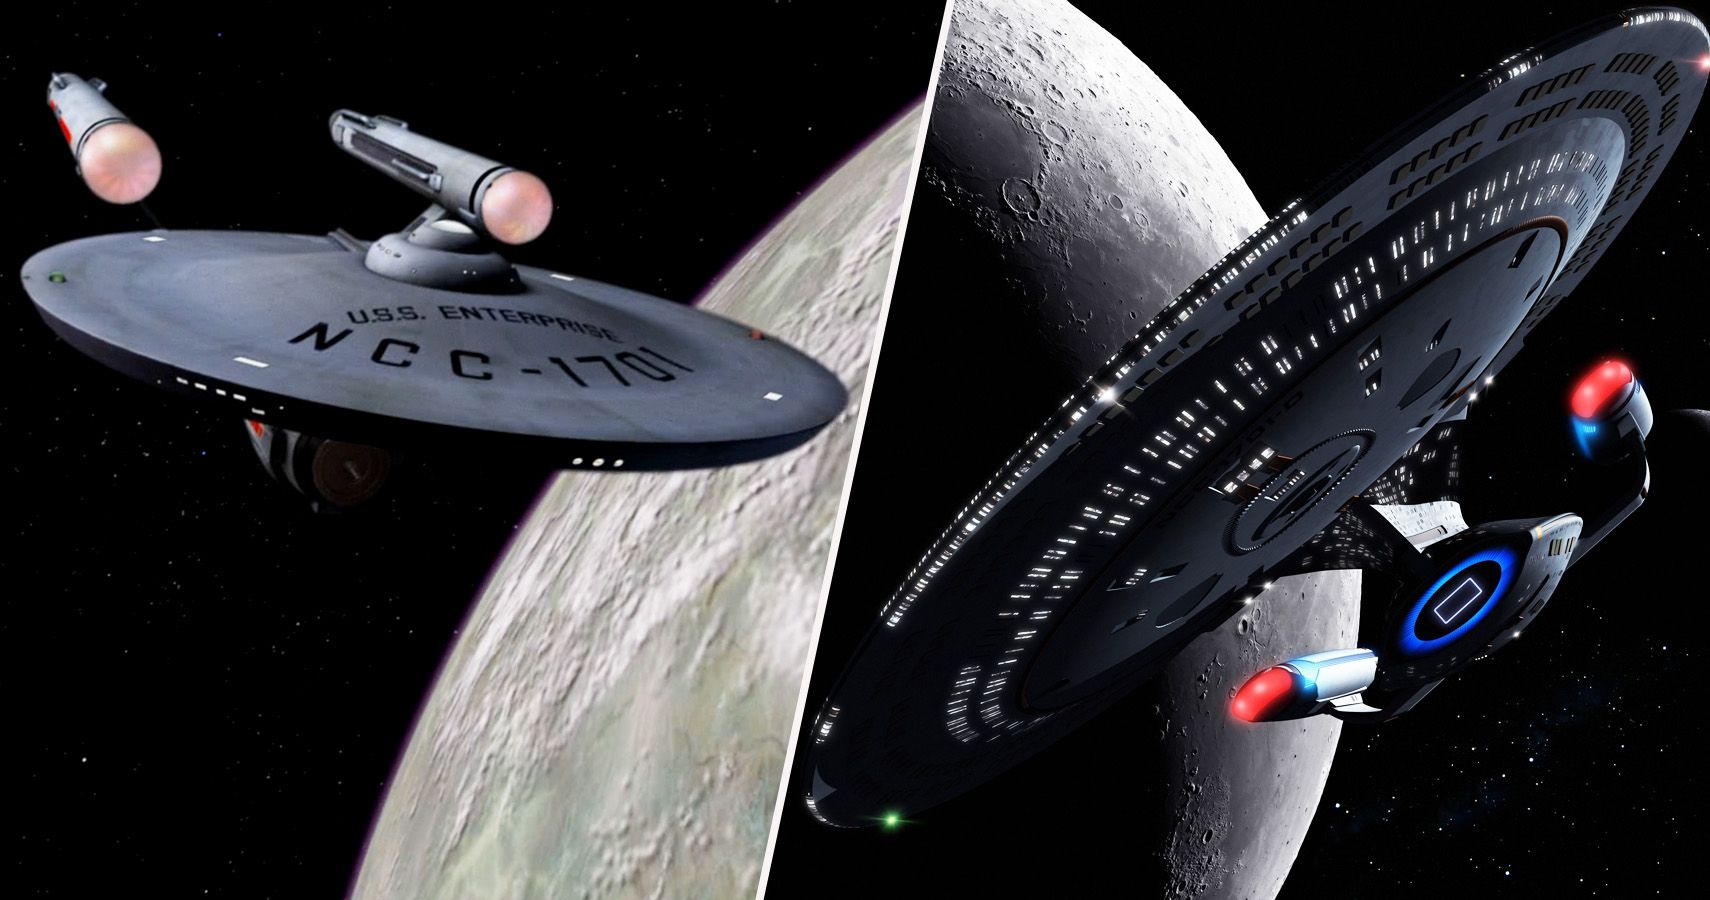 Star Trek: Every Version Of The Starship Enterprise